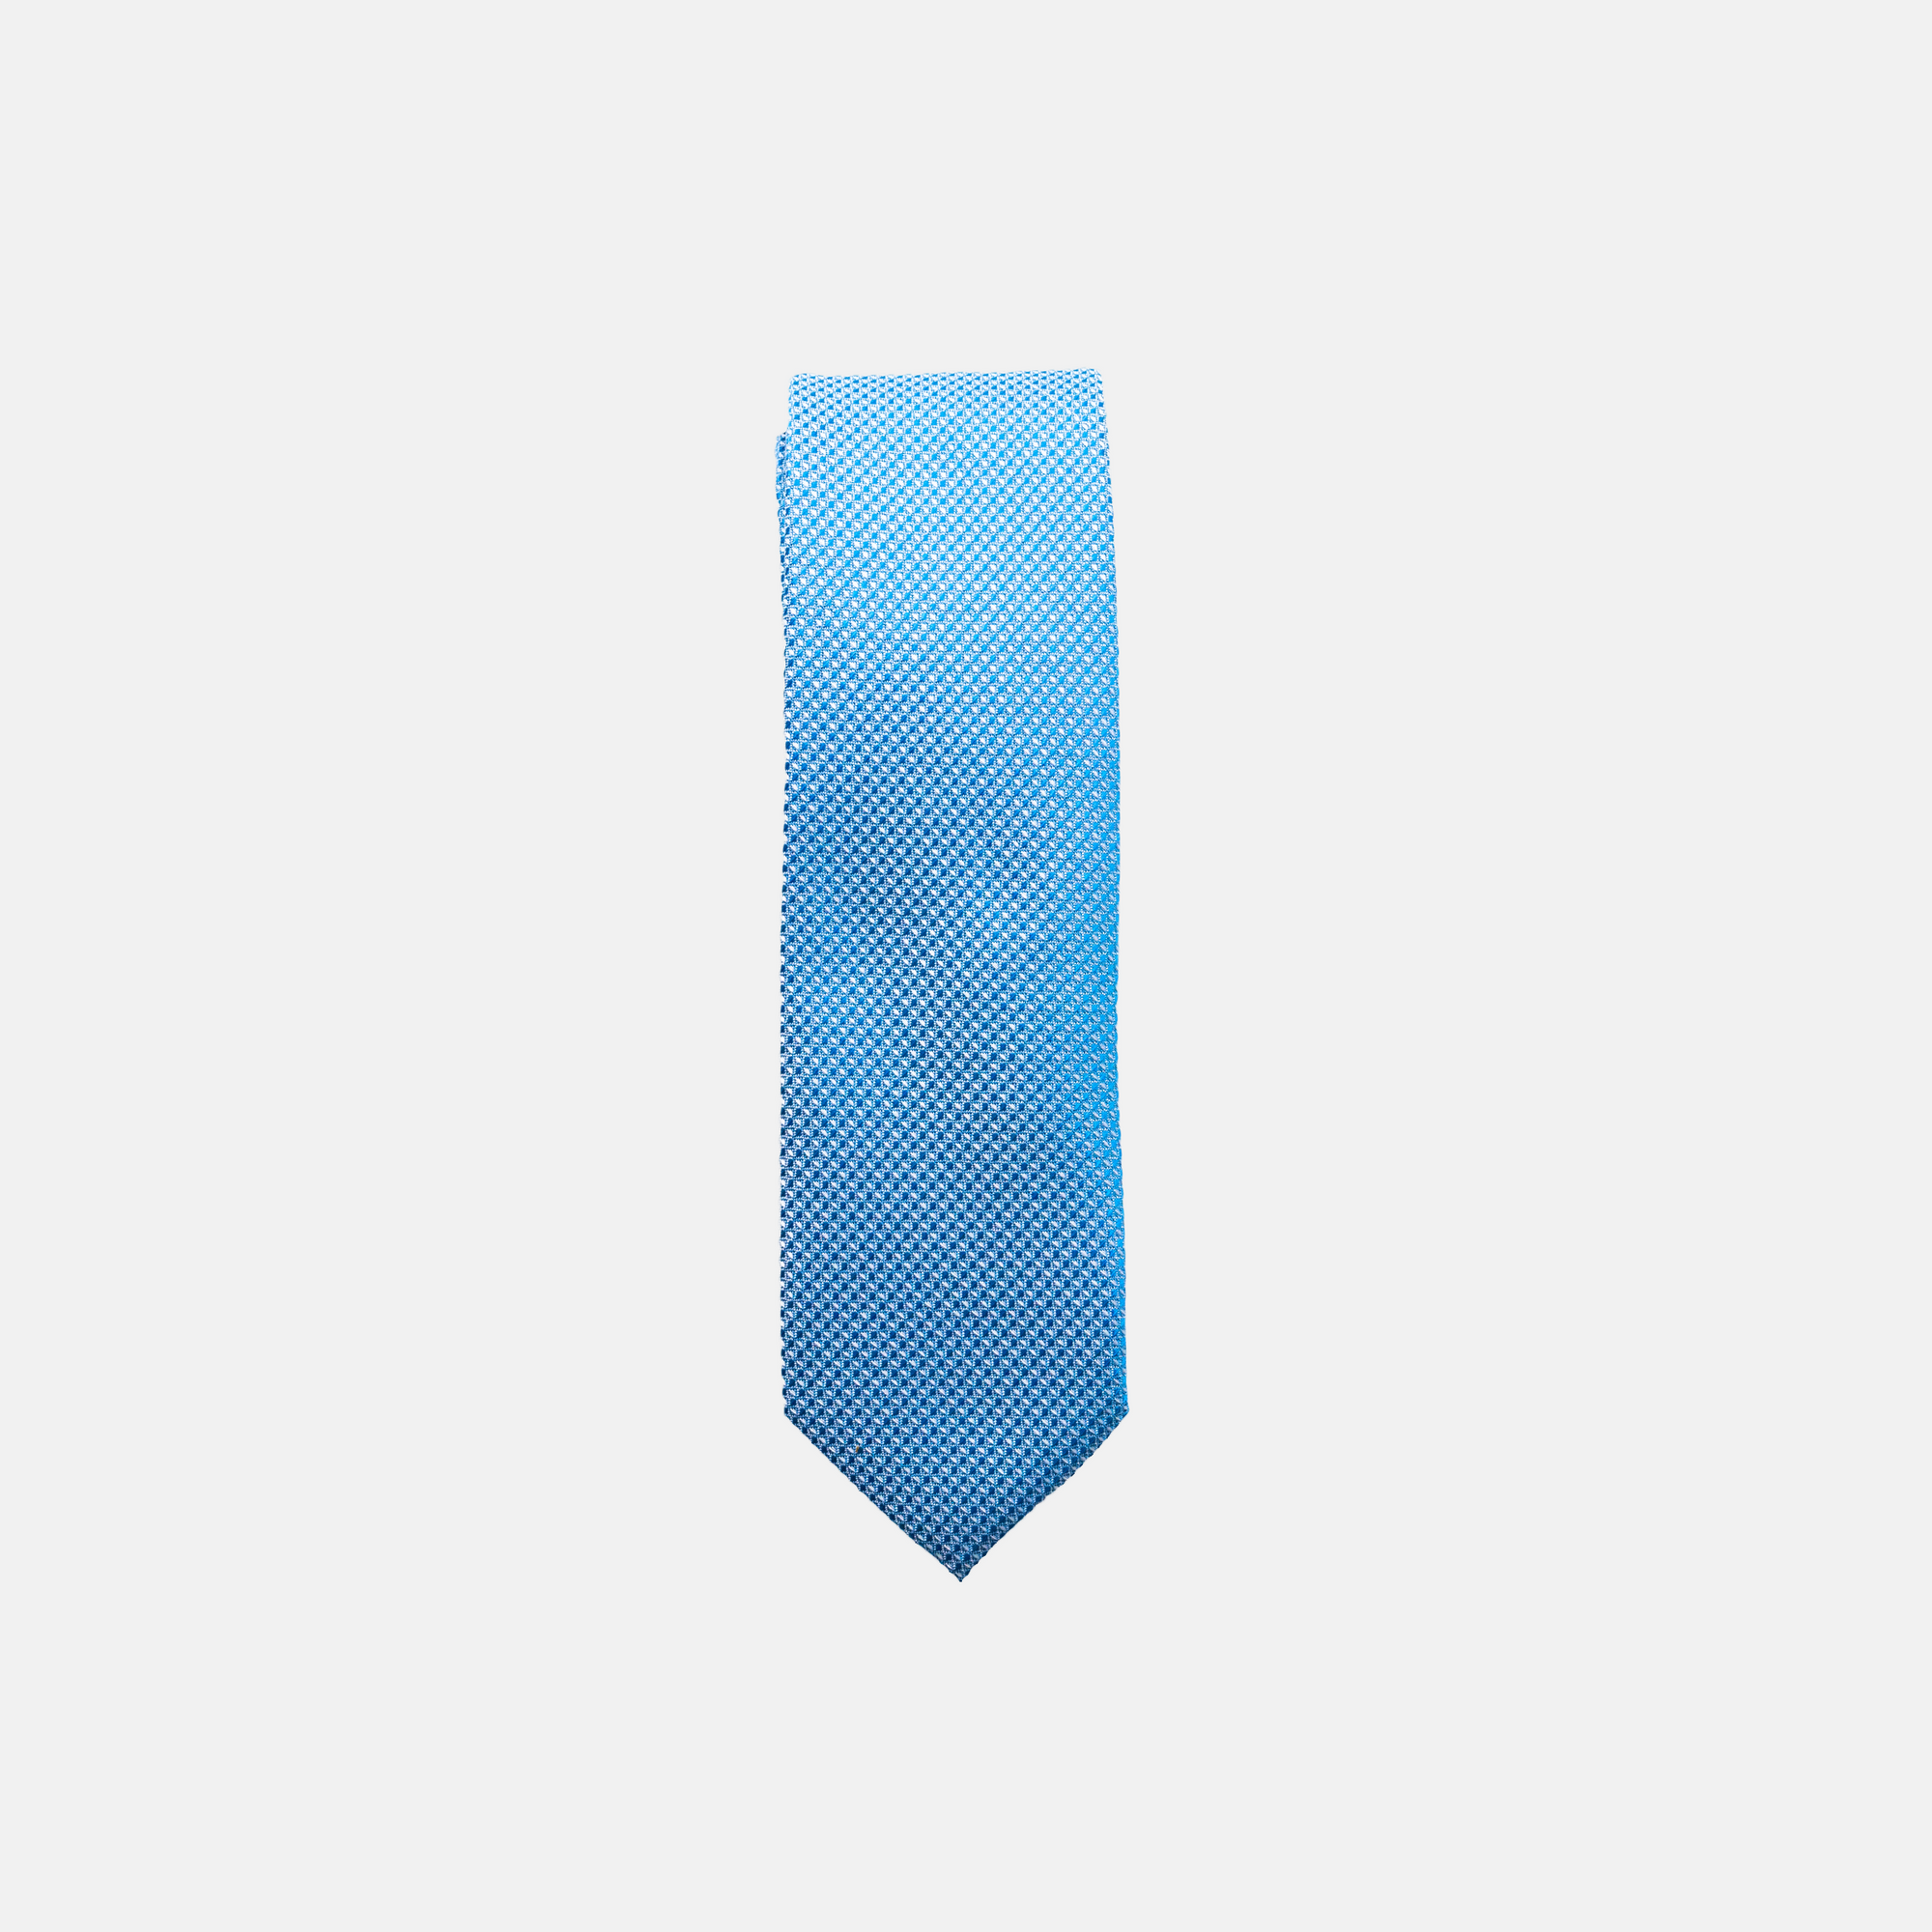 PENN || BOY - Boy's Tie